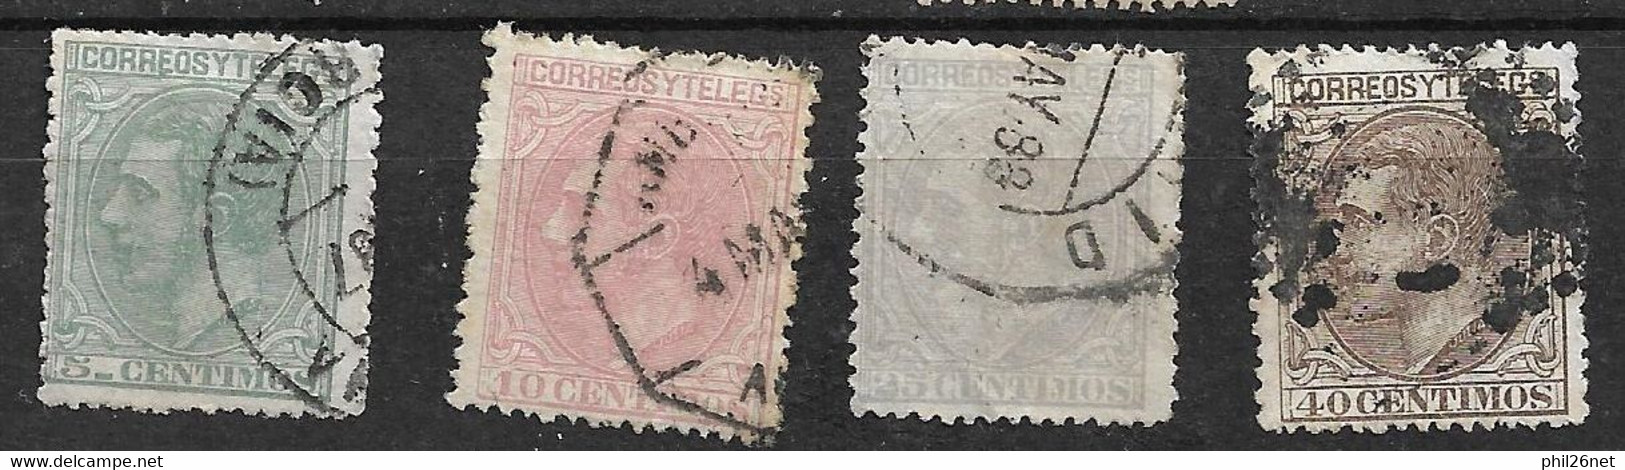 Espagne   N°184; 185; 188 Et 189      Oblitérés  B/TB      Voir Scans..  - Used Stamps